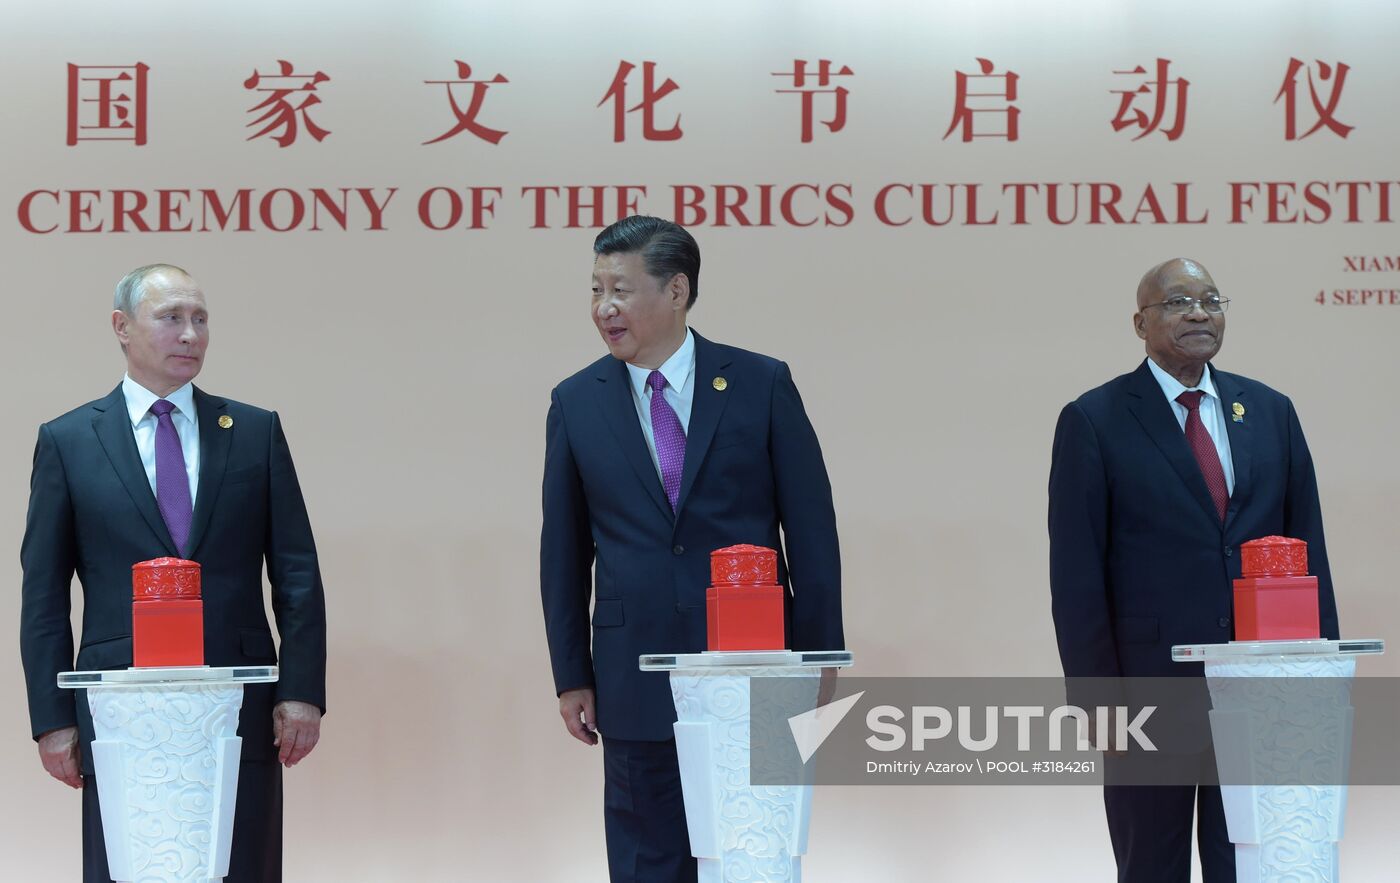 Russian President Vladimir Putin participates in BRICS summit